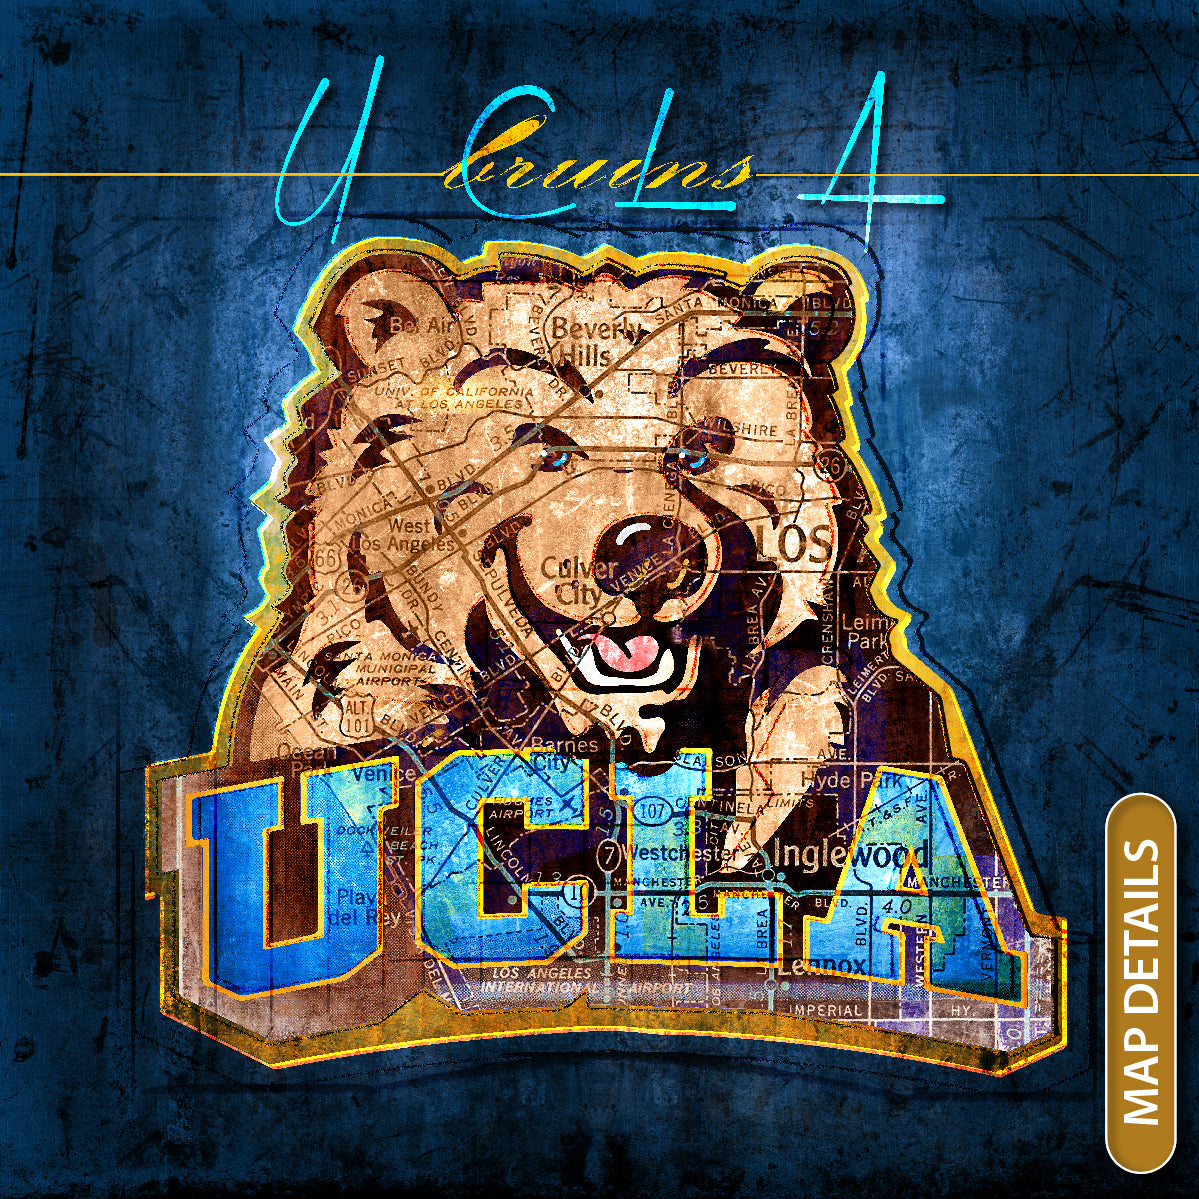 ucla bear logo